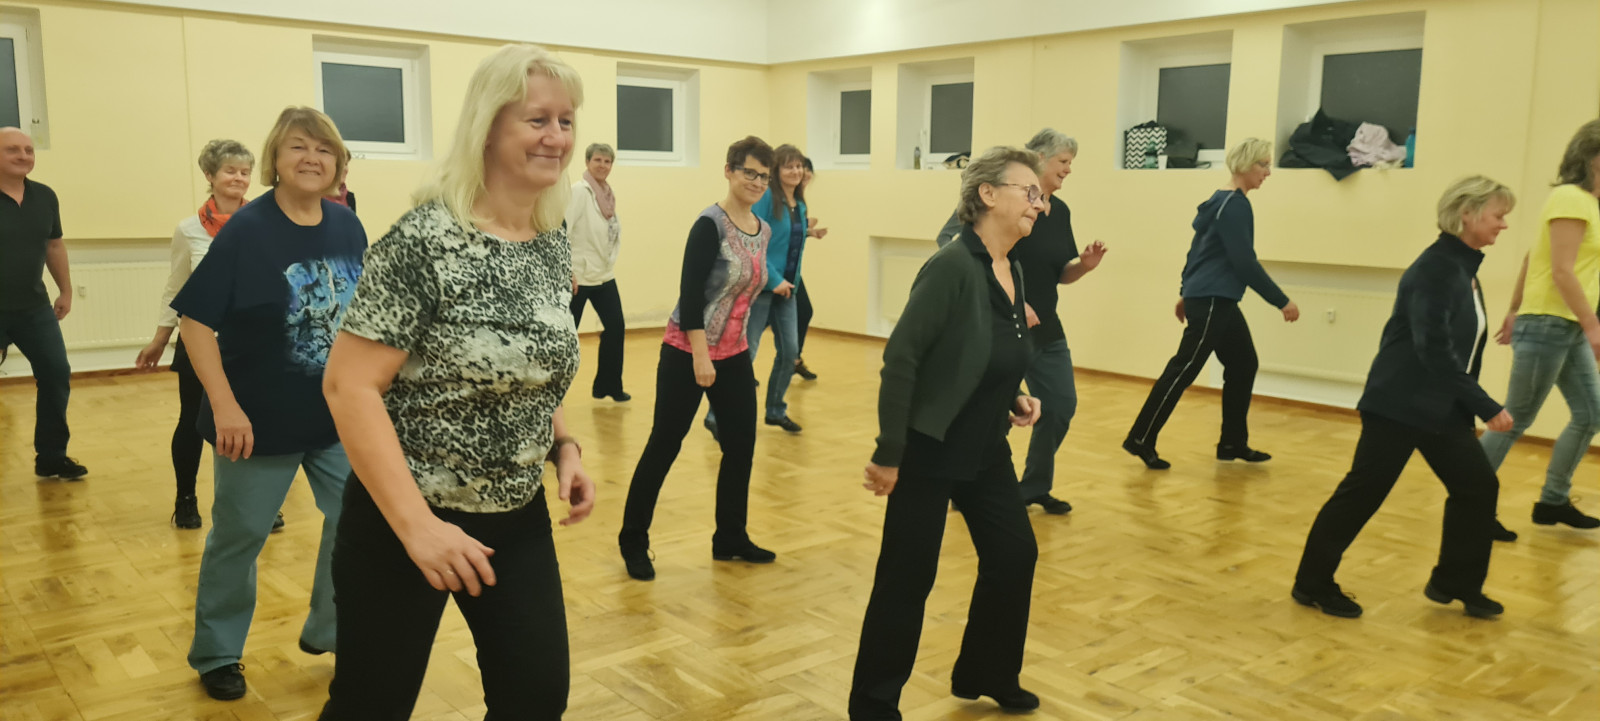 Die Line-Dance-Gruppe von Ines Jentzsch ist mit viel Freude dabei. Foto: privat